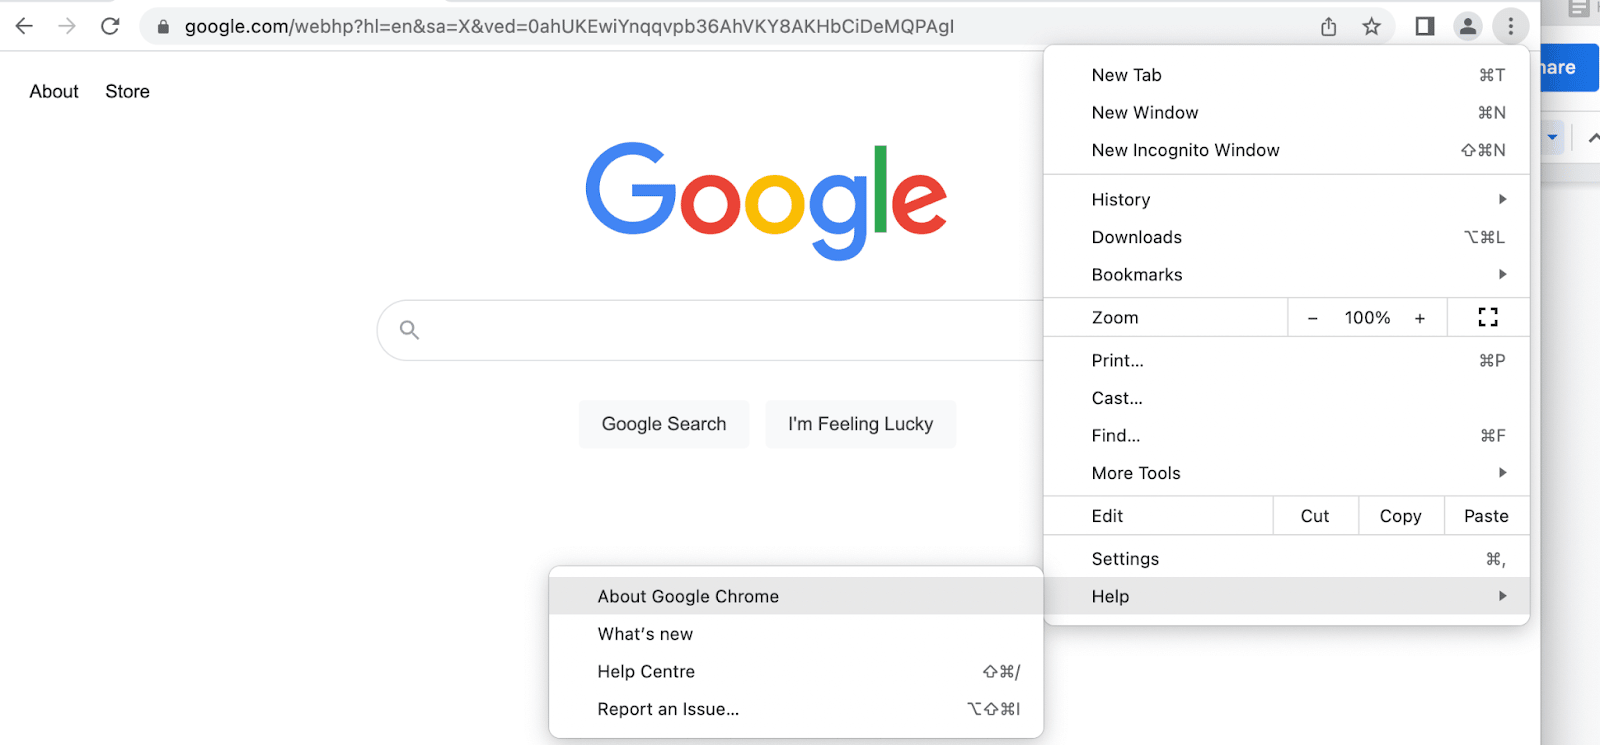 Kontrollera om Google Chrome behöver uppdateras